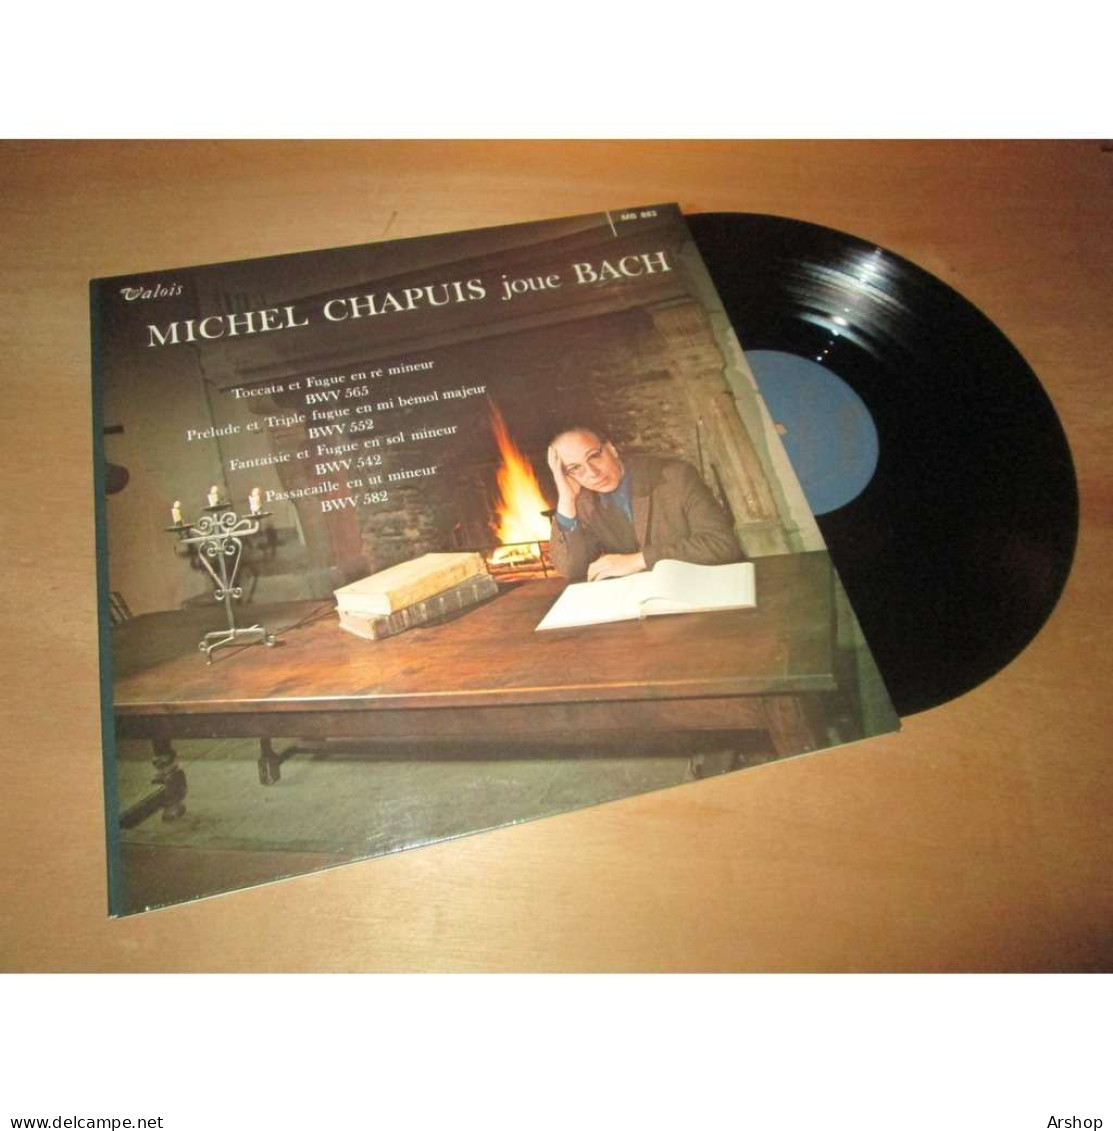 MICHEL CHAPUIS Joue BACH -  VALOIS MB 883 Lp - Classica